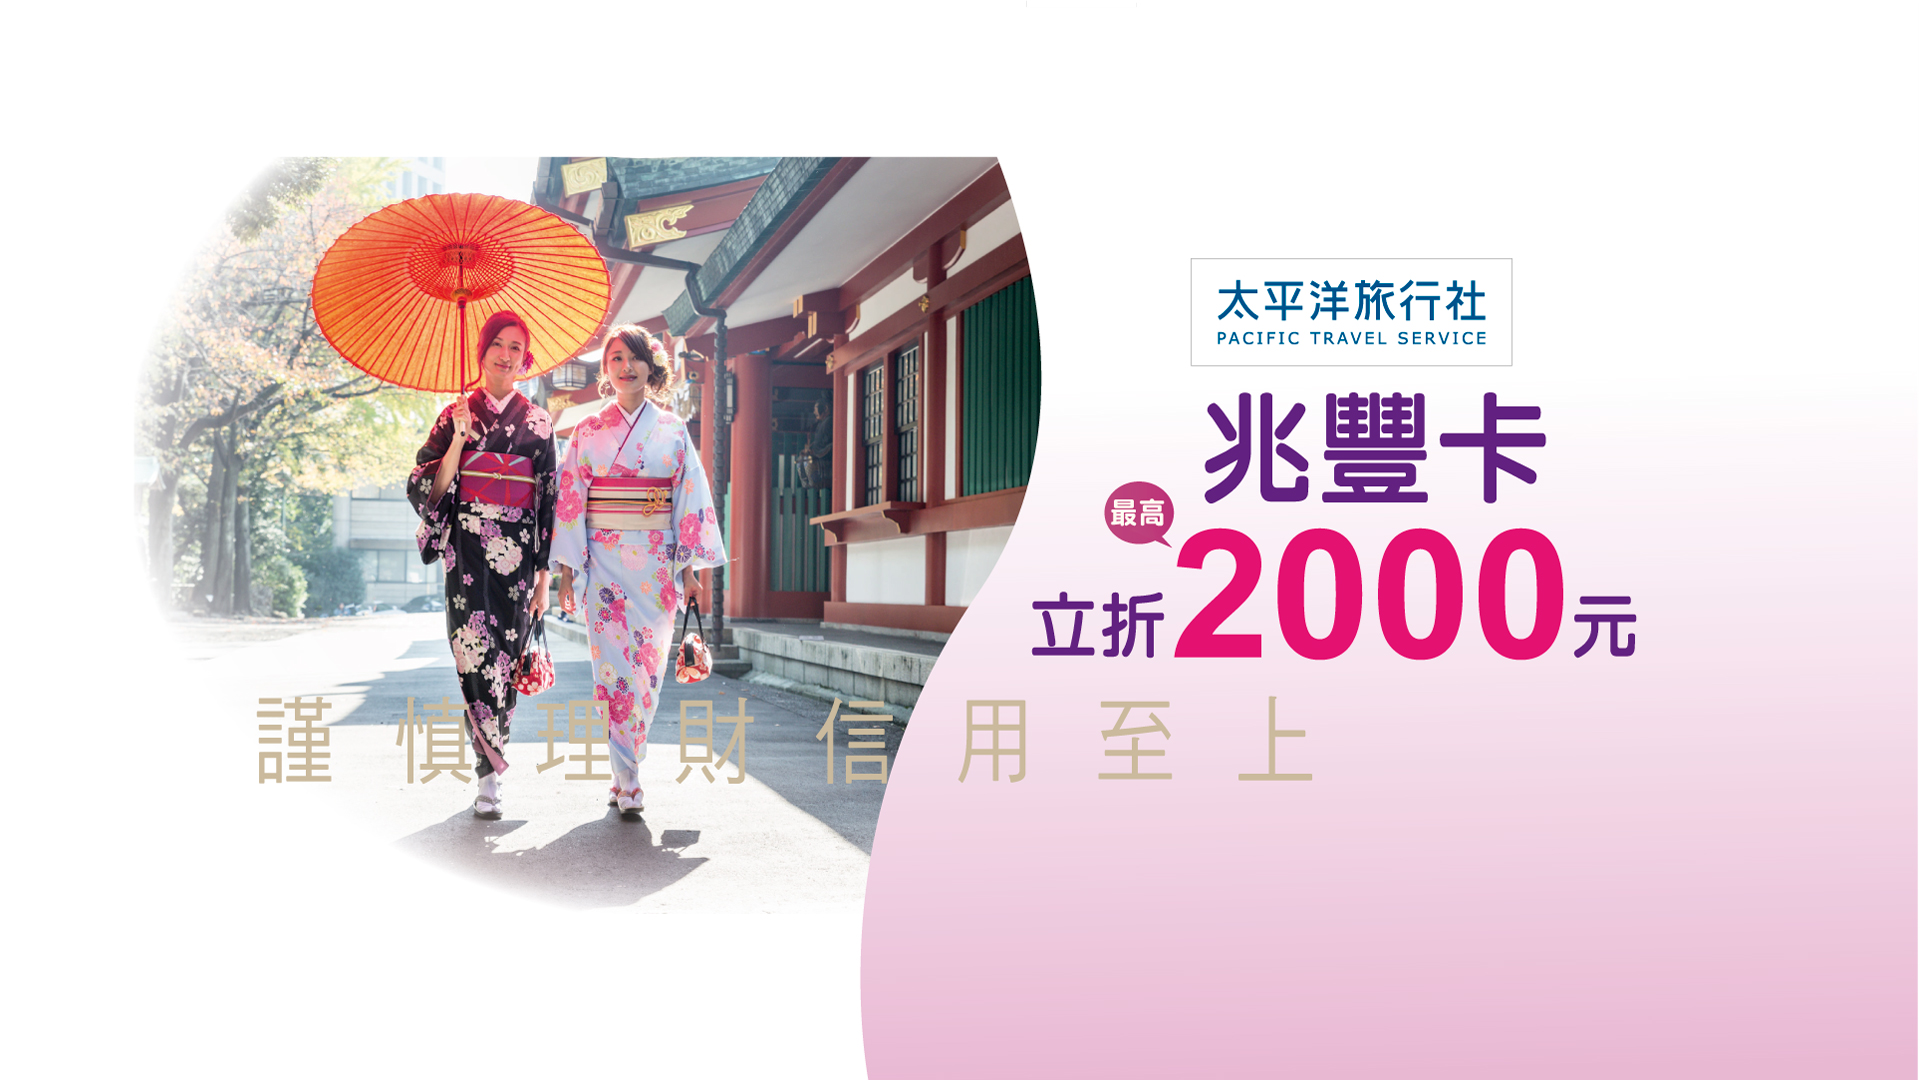 「太平洋旅行社·兆豐卡最高每人現折2000元」banner